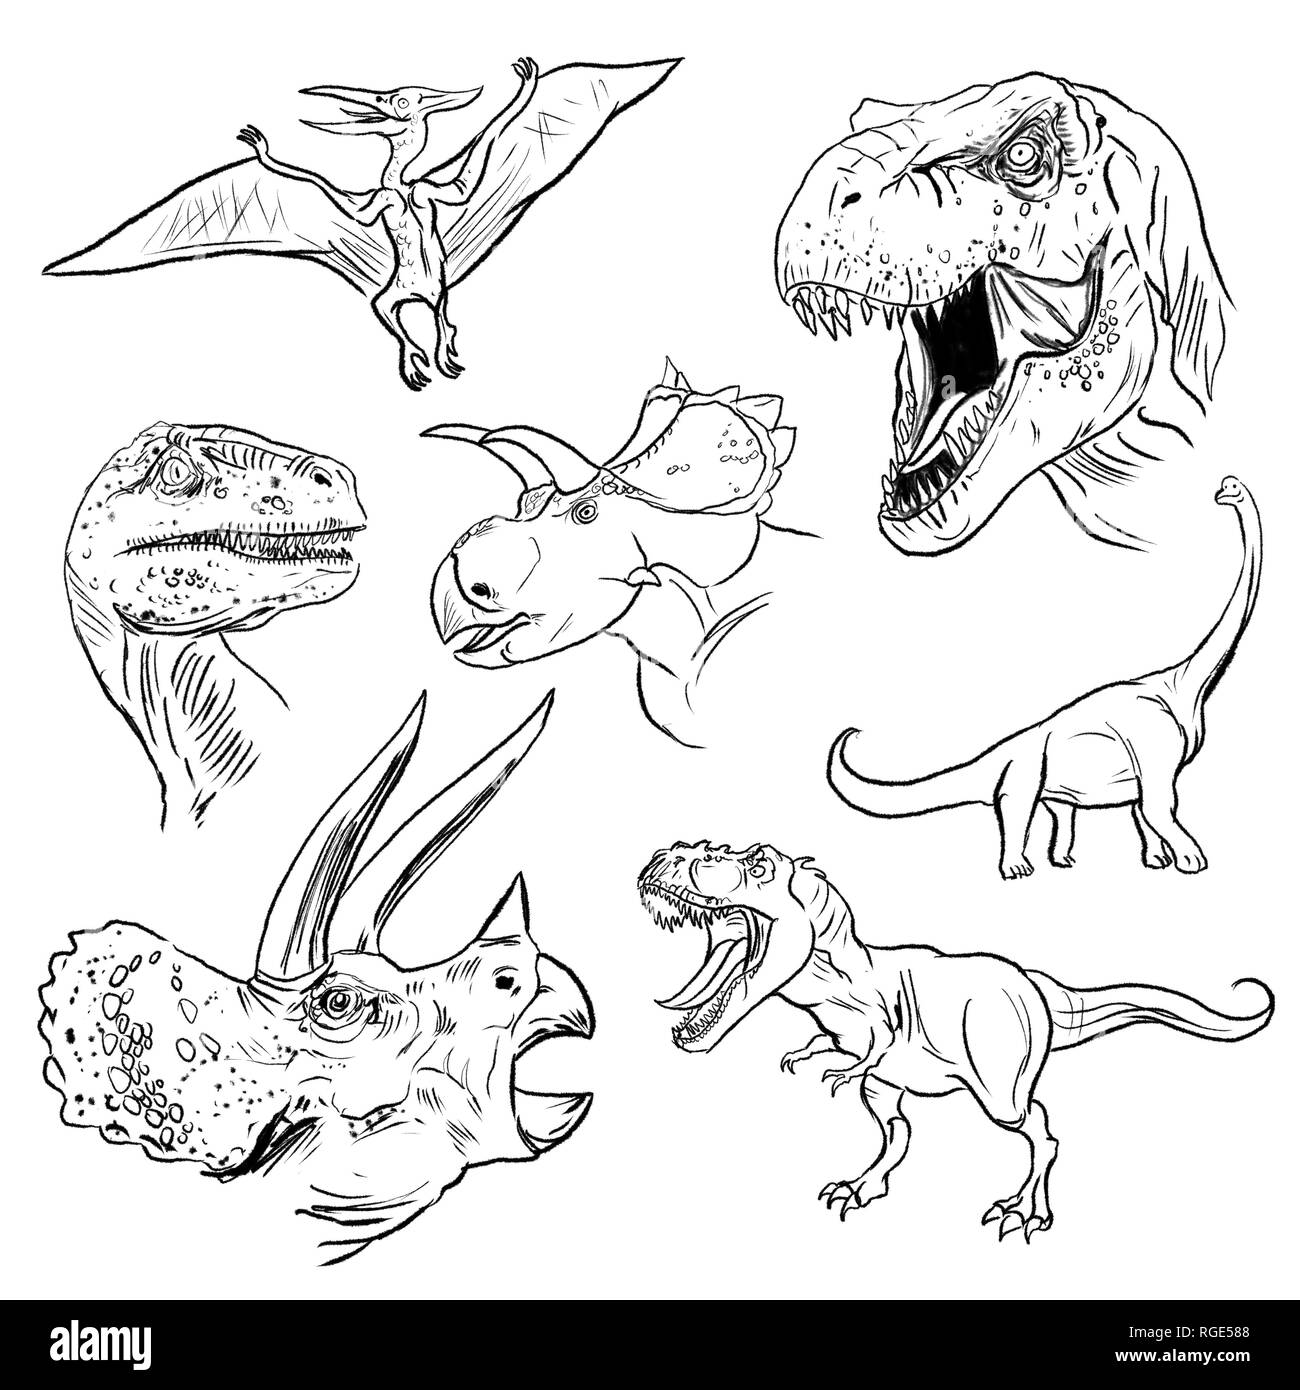 Página De Dinosaurios Variados Dibujos Line Art Fotografía De Stock Alamy 9031